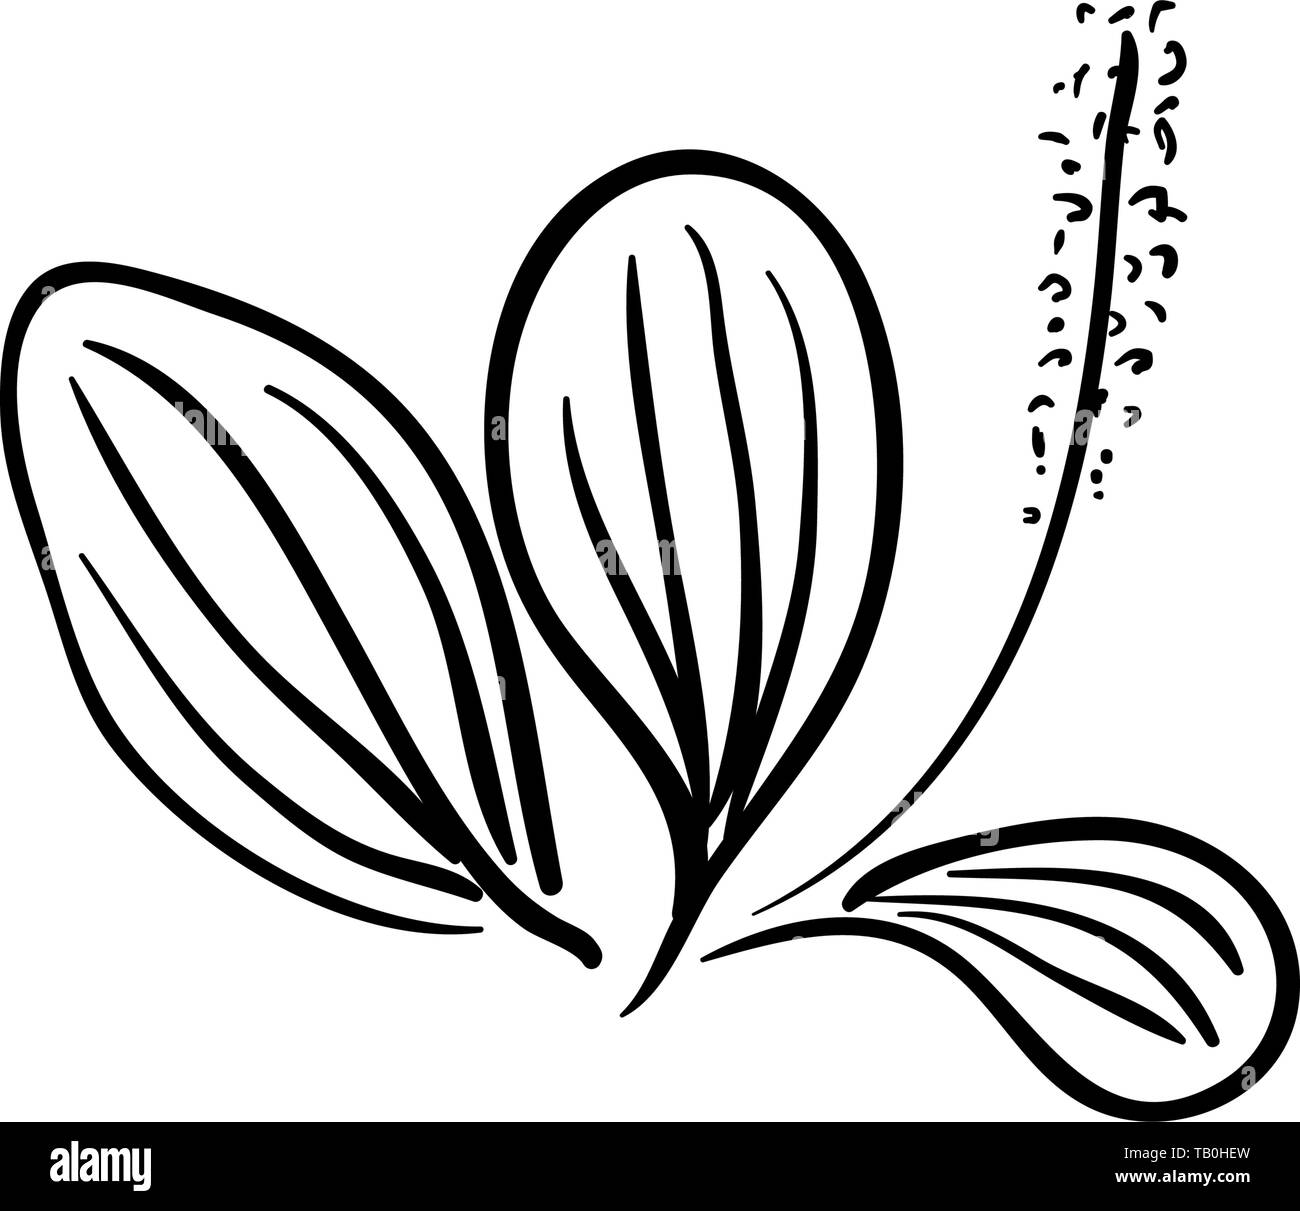 Blooming Ribwort piantaggine lanceolata planzago, narrowleaf piantaggine, ribleaf herb isolato su uno sfondo bianco. Ribwort piantaggine è una a base di erbe naturali Illustrazione Vettoriale